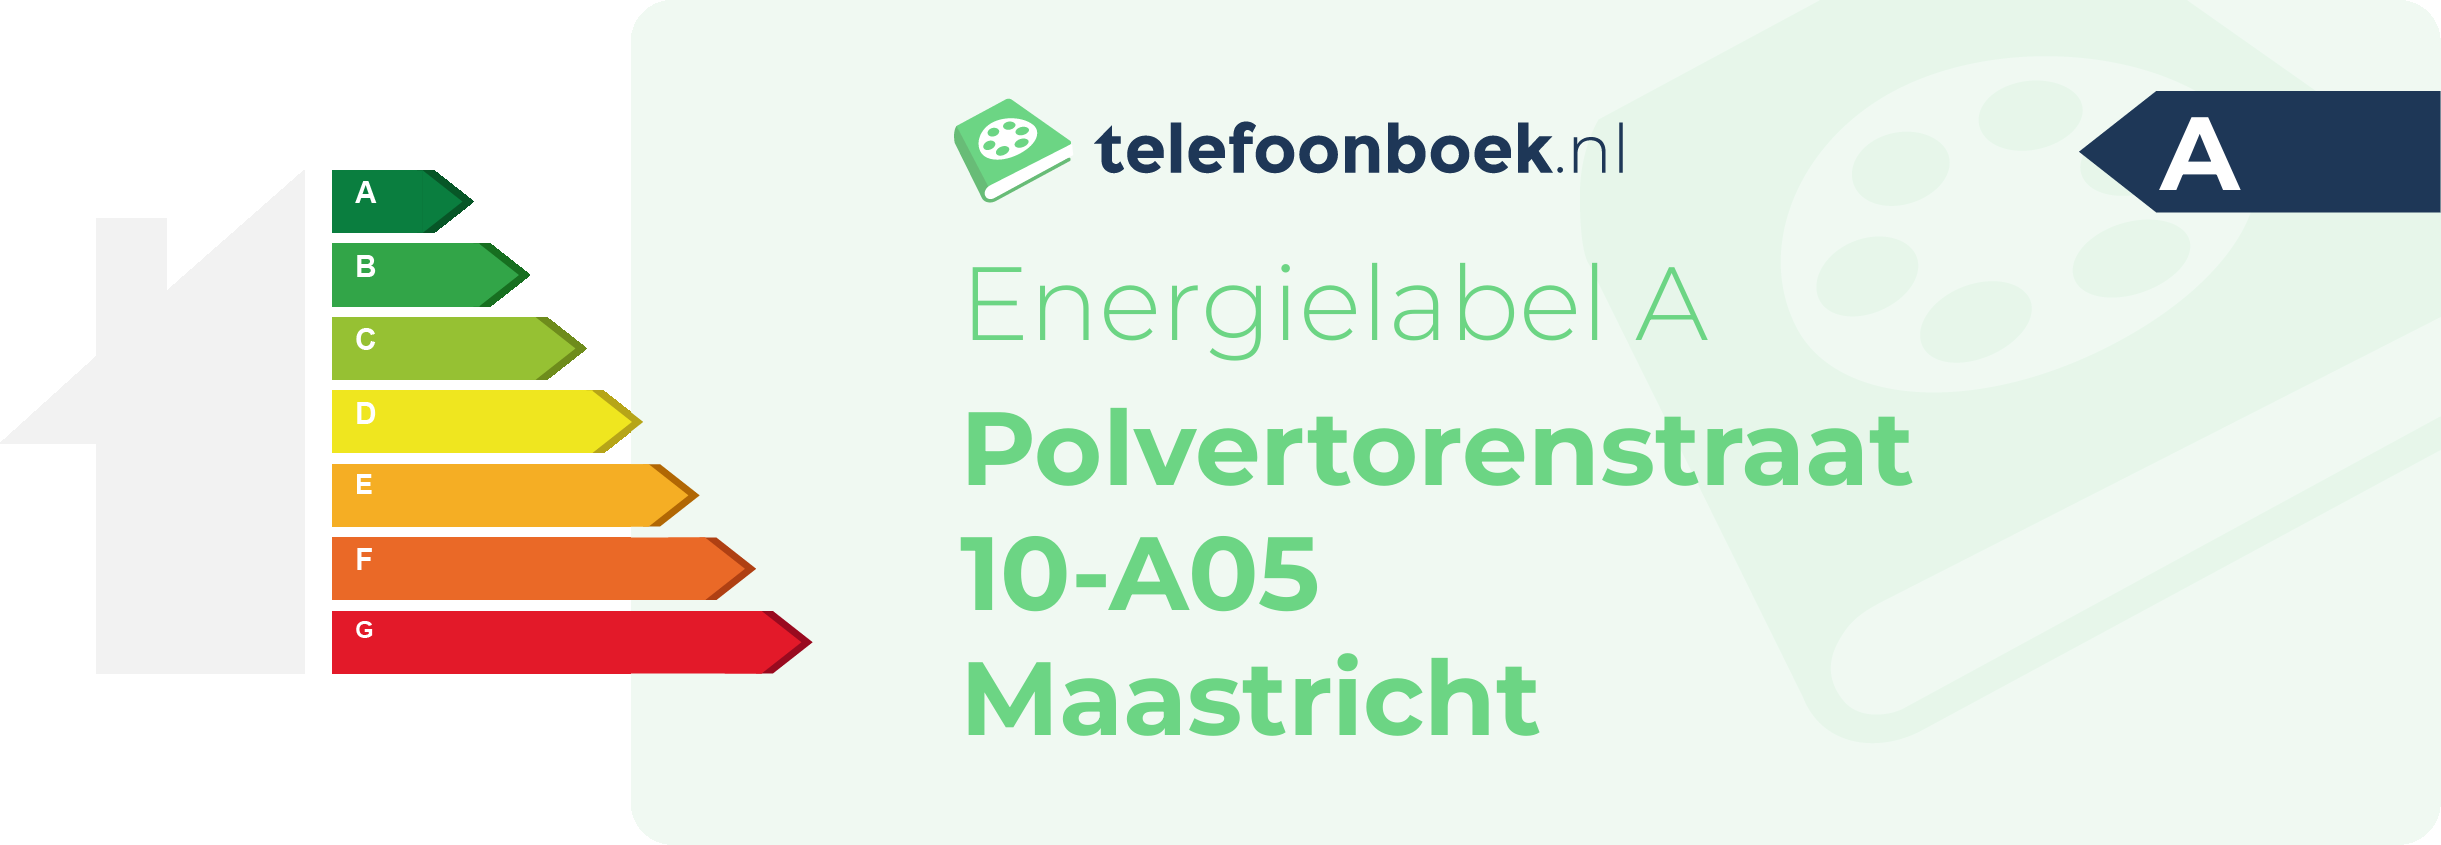 Energielabel Polvertorenstraat 10-A05 Maastricht